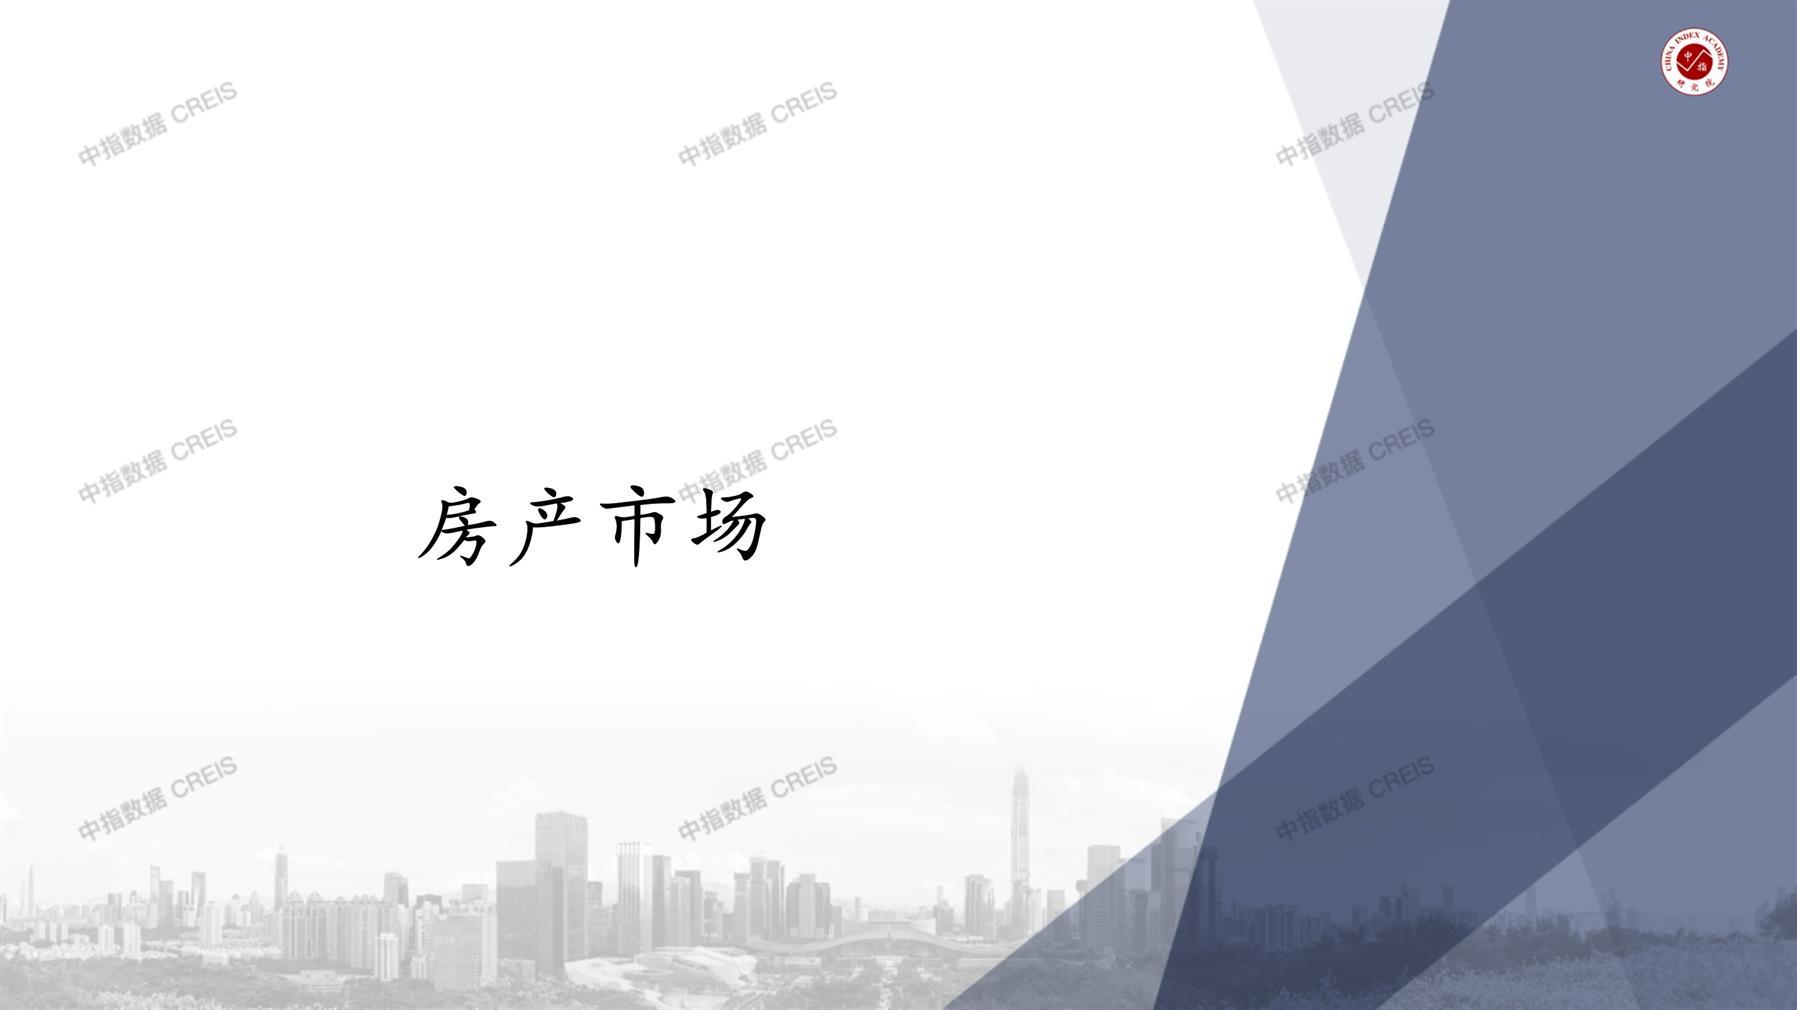 北京、北京房地产市场、商品房销售、住宅成交、土地市场、地块面积、北京写字楼